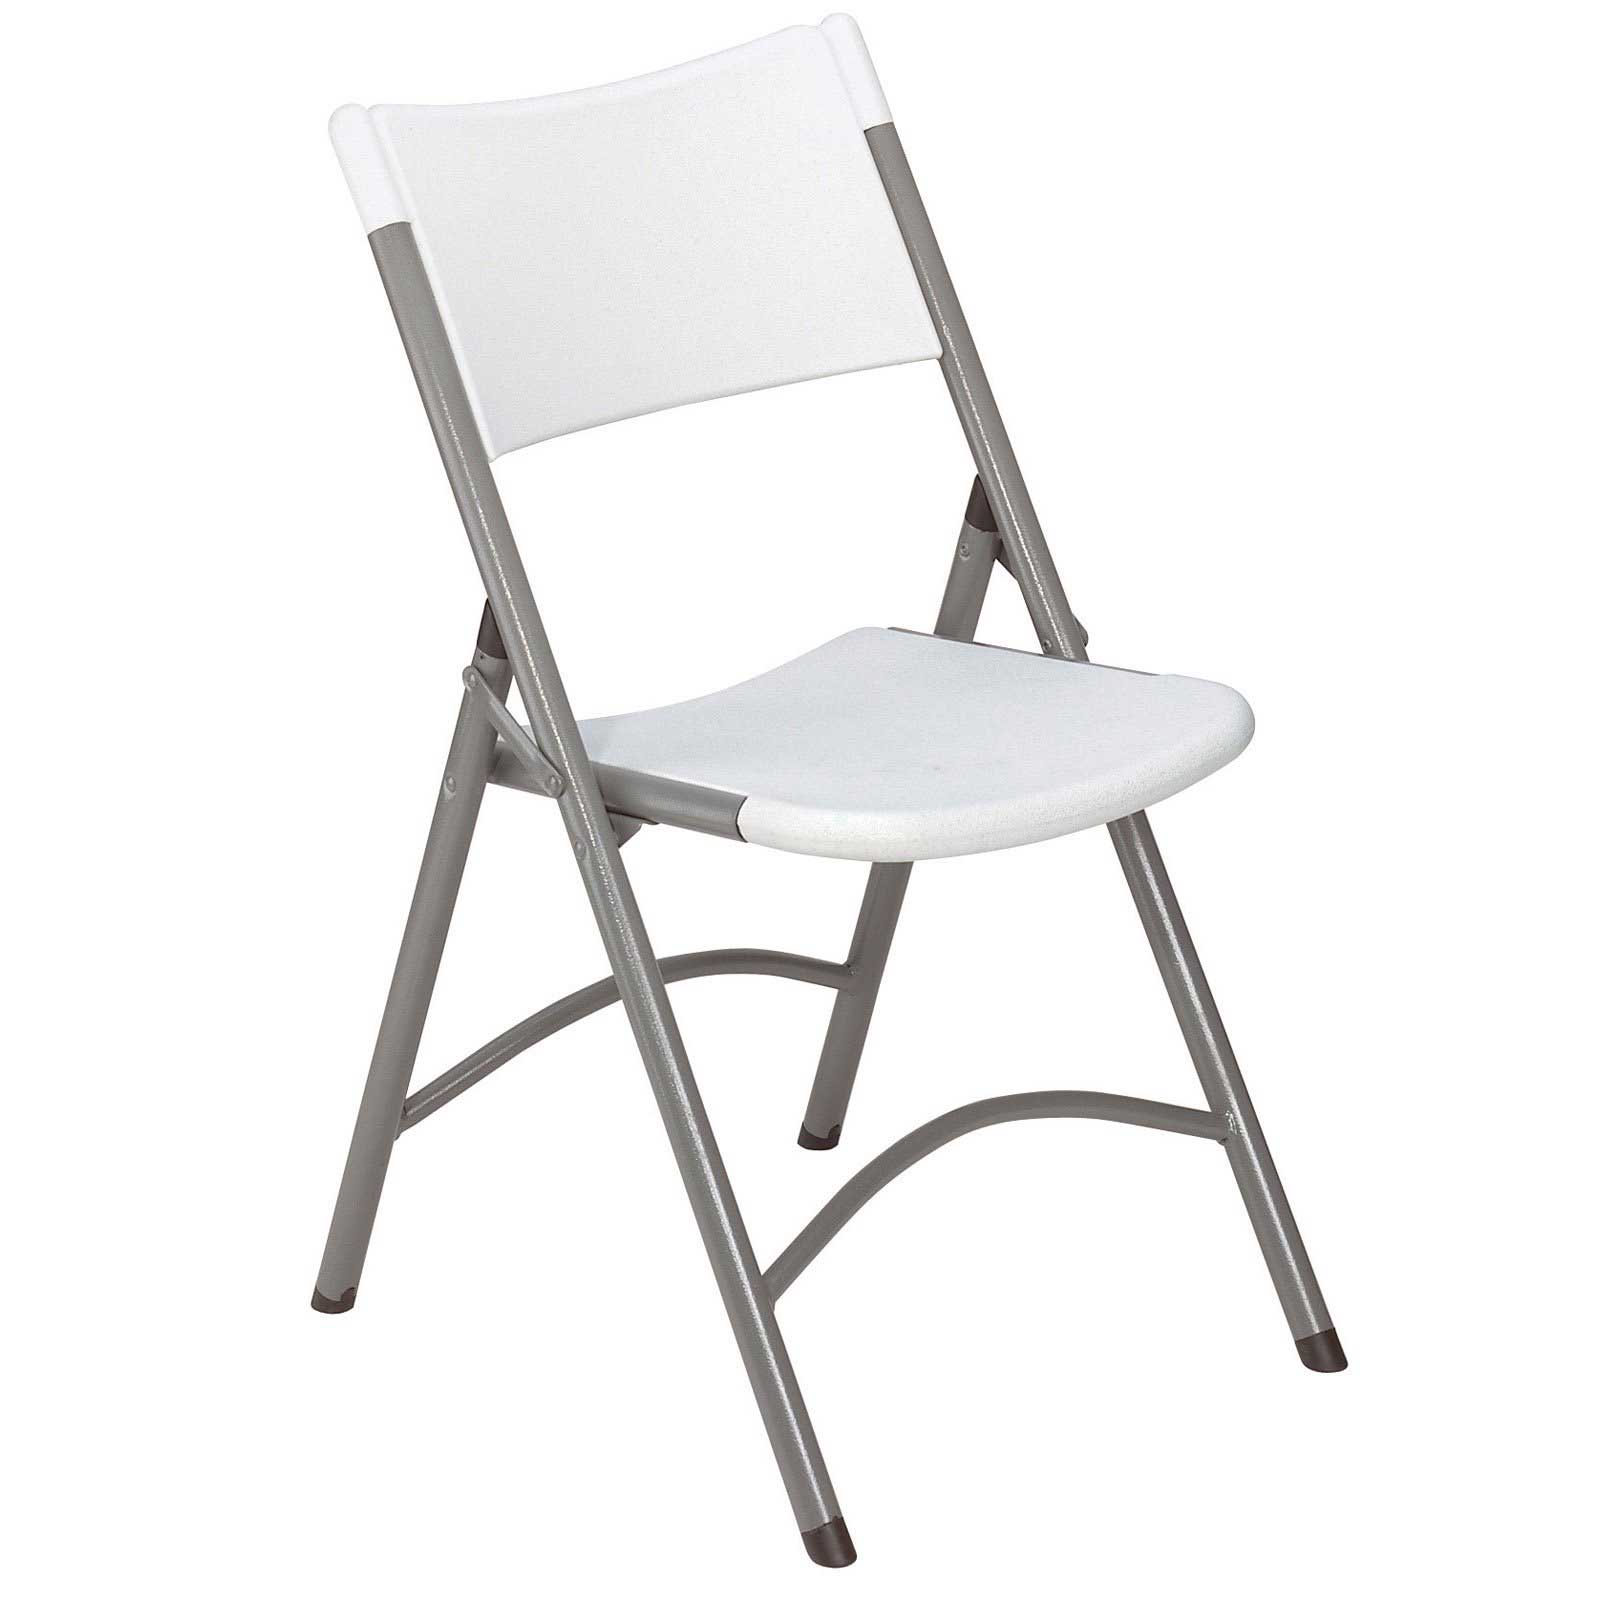 lightweight folding chair